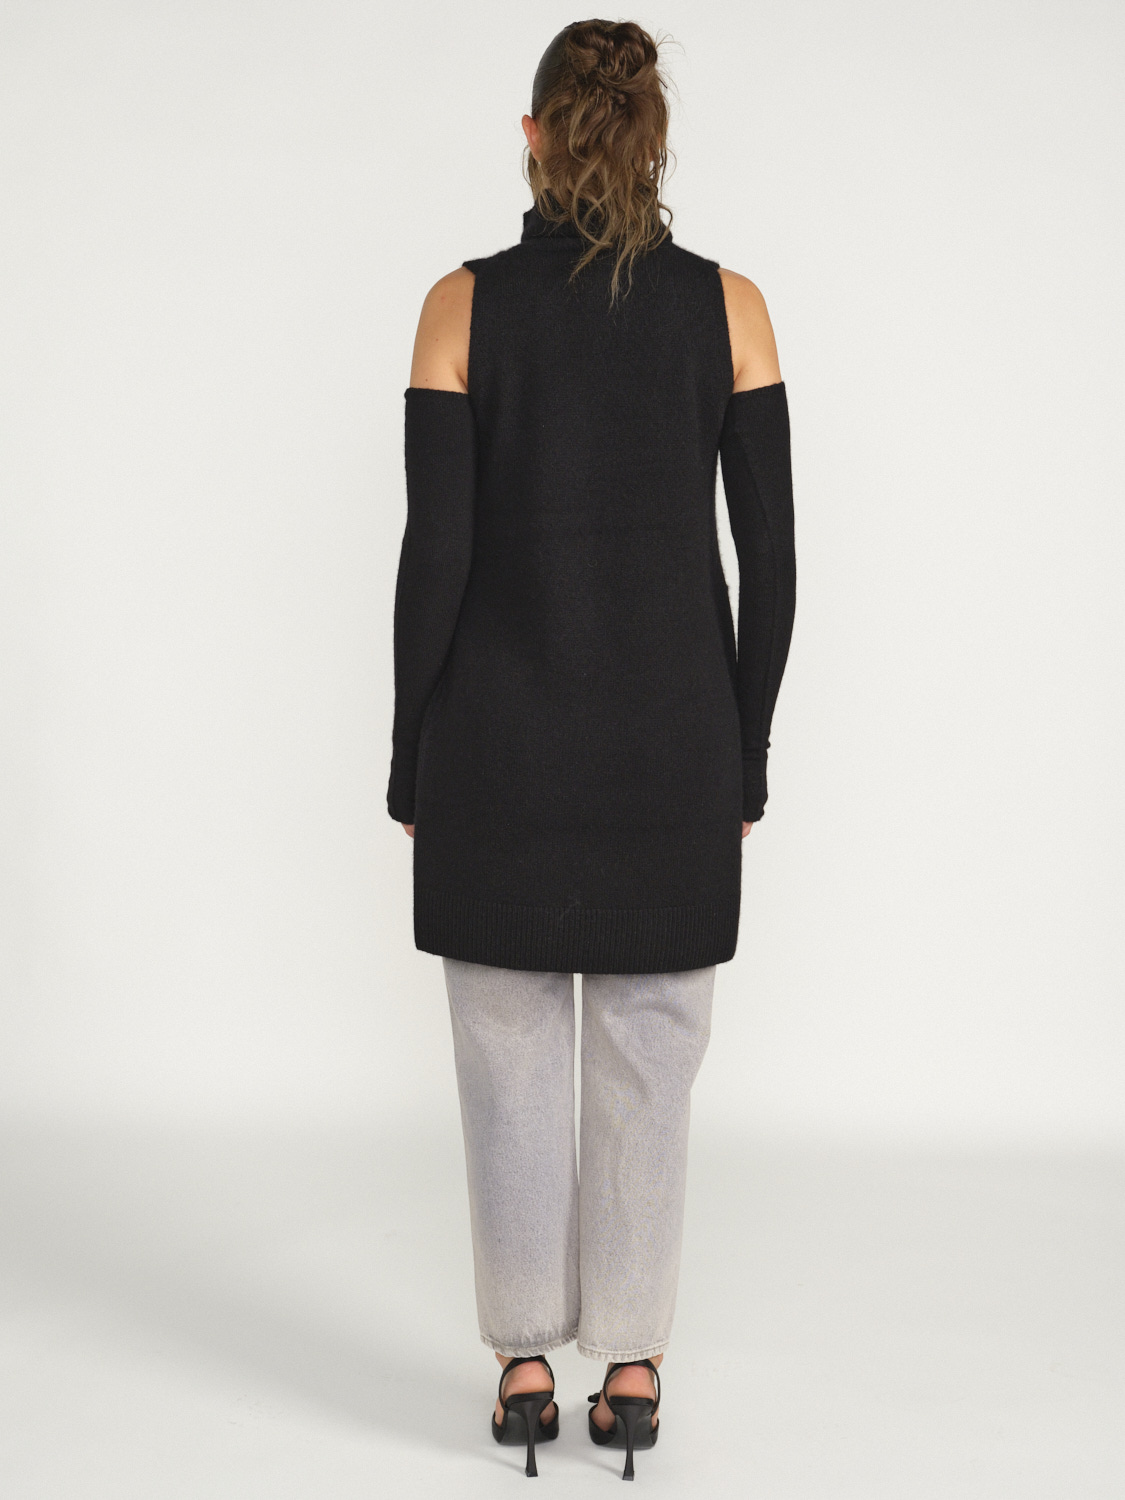 Iris von Arnim Svea - Sleeveless dress in cashmere black S